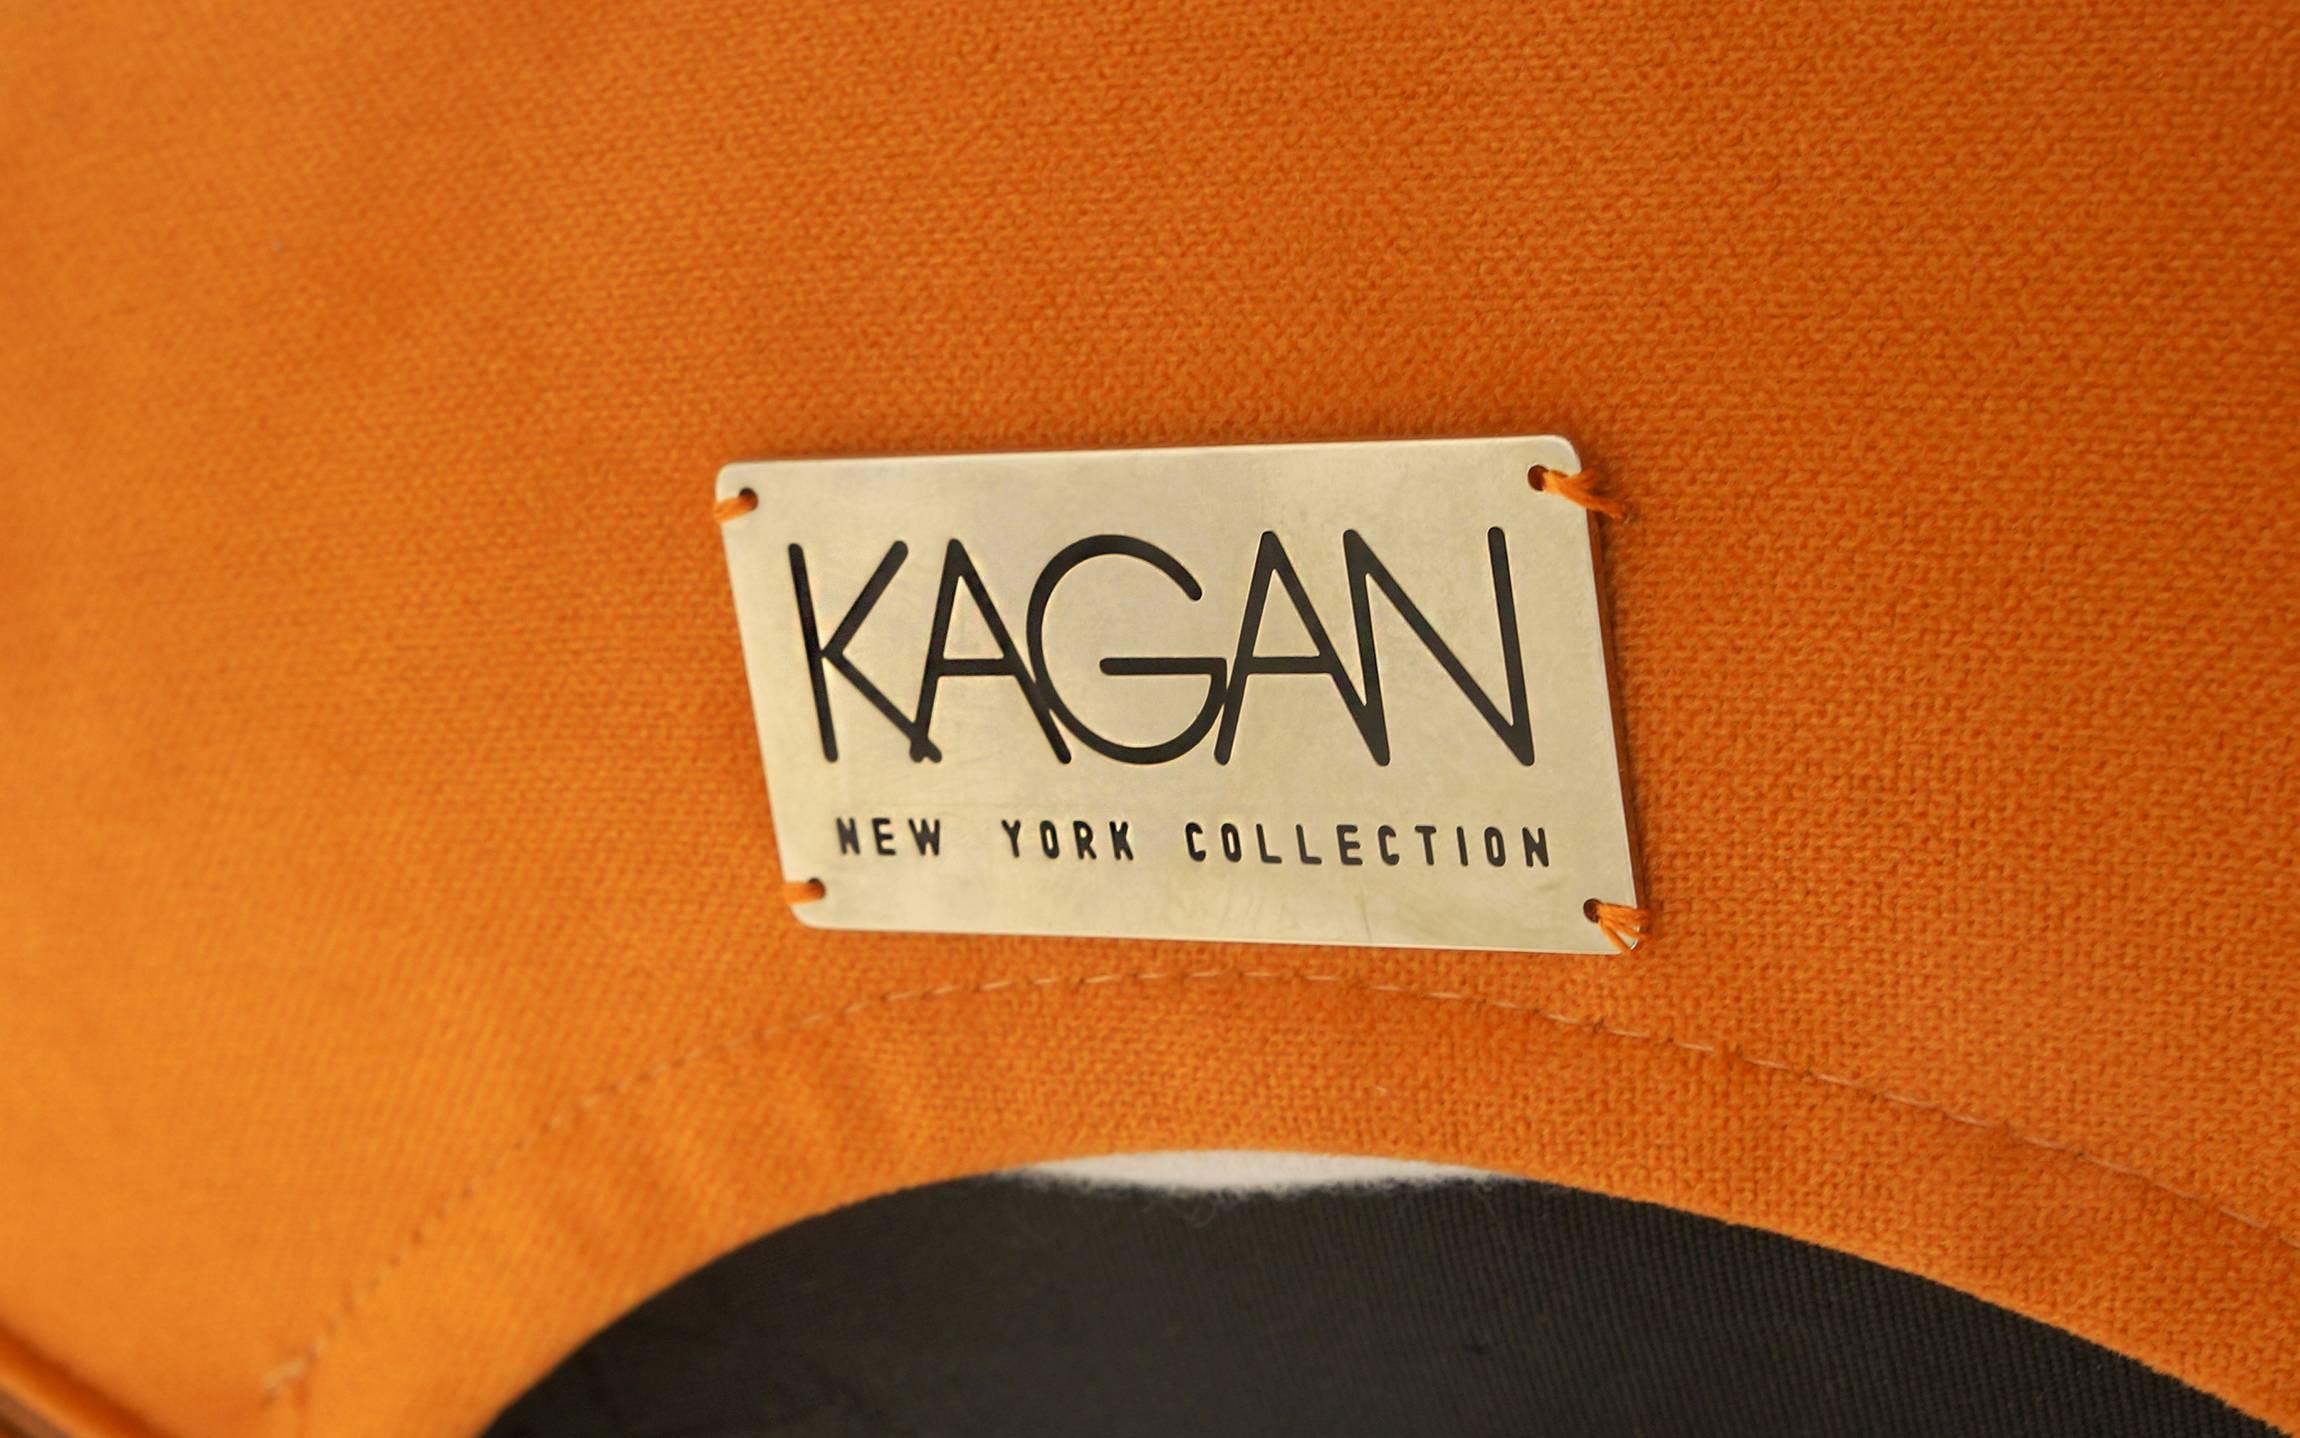 Vladimir Kagan Triangular Stool or Ottoman for the Kagan New York Collection For Sale 1